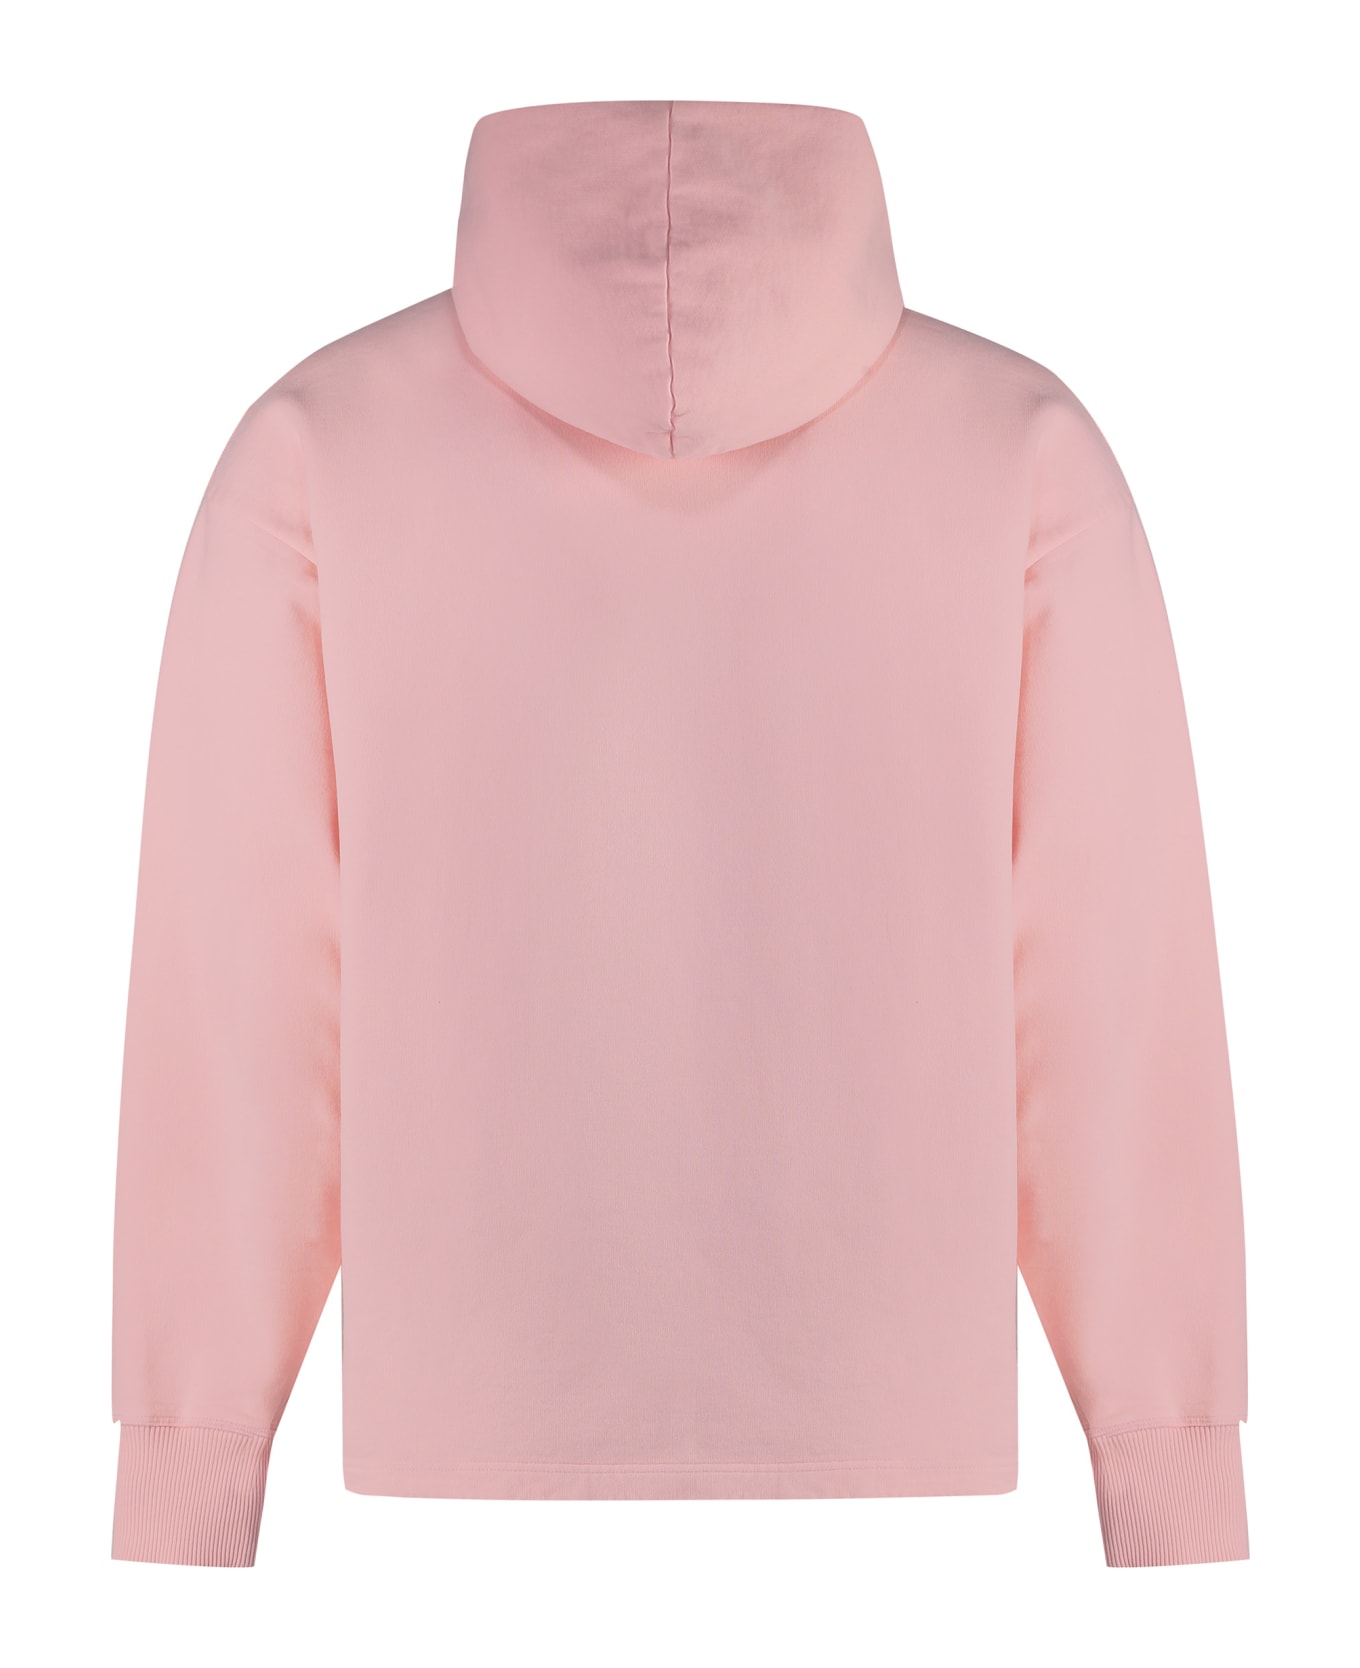 Acne Studios Hooded Sweatshirt - Pink